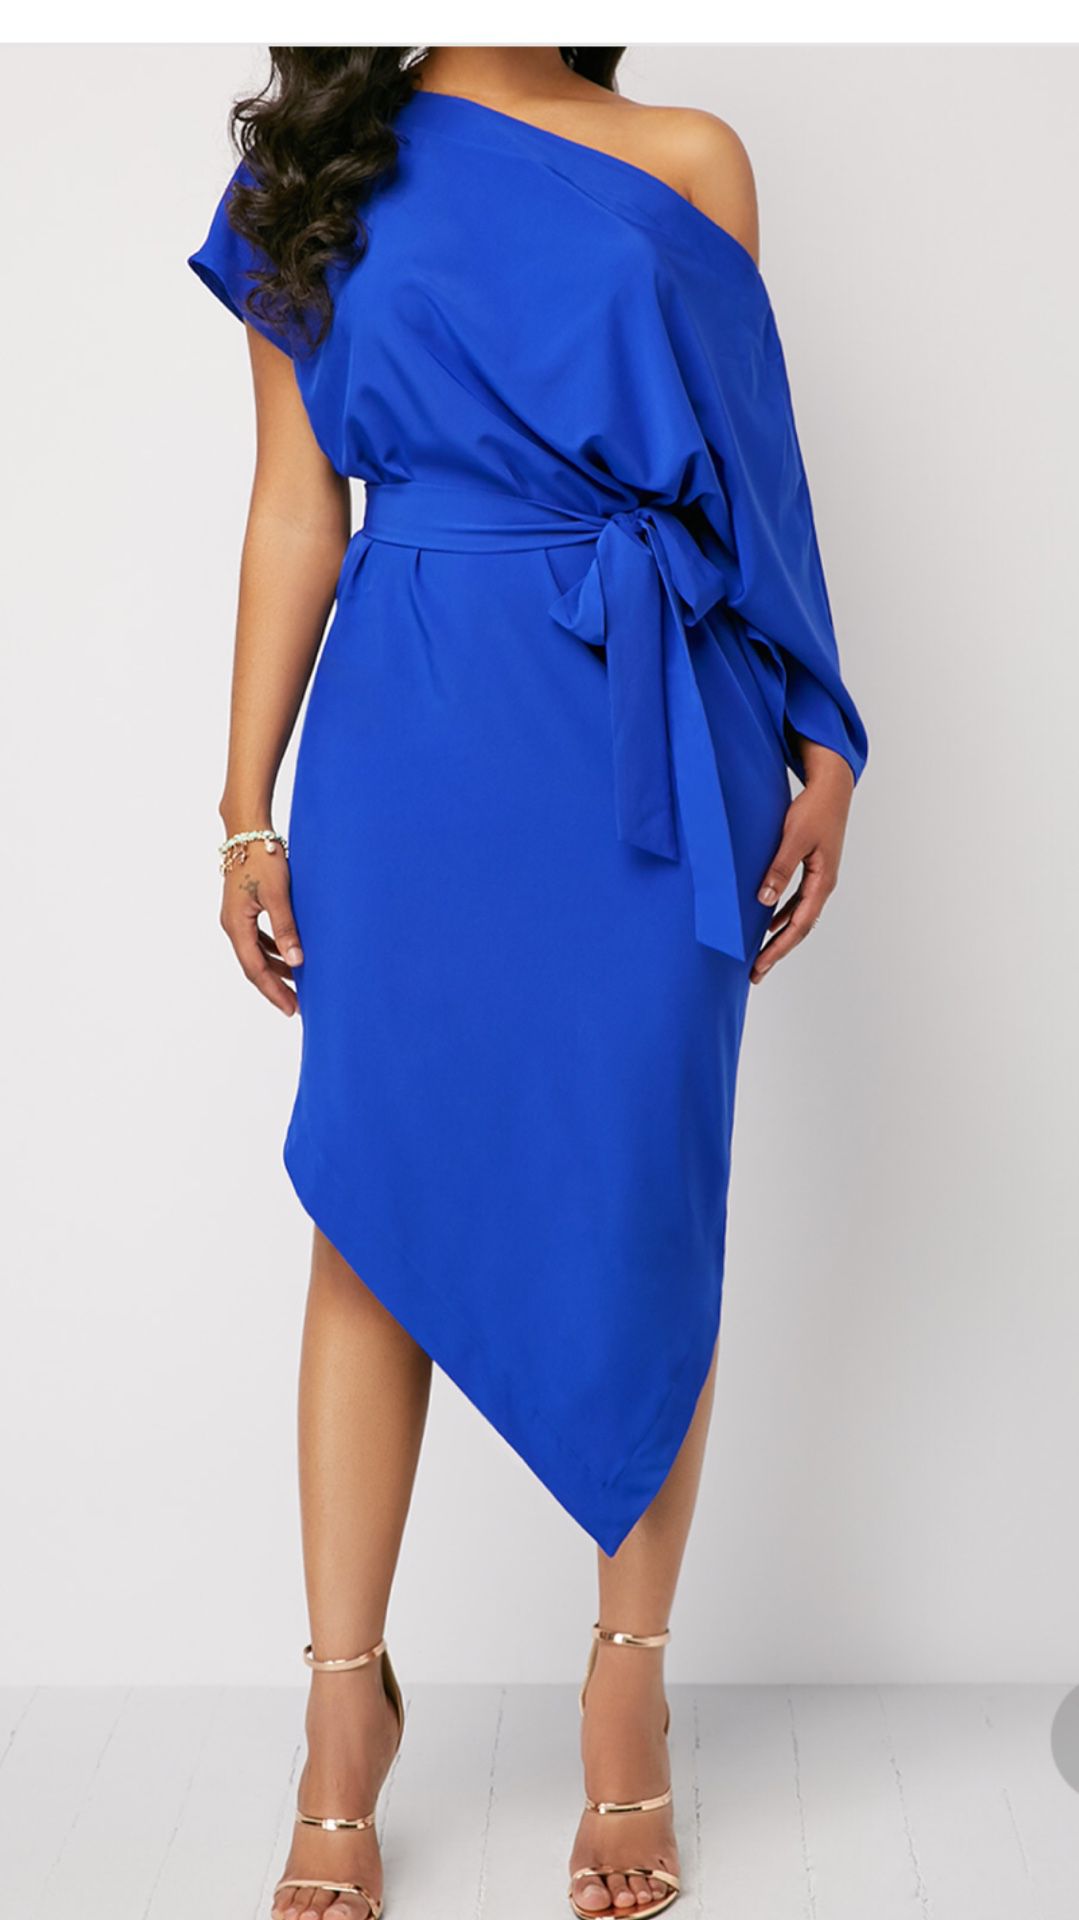 Royal Blue dress Size Med